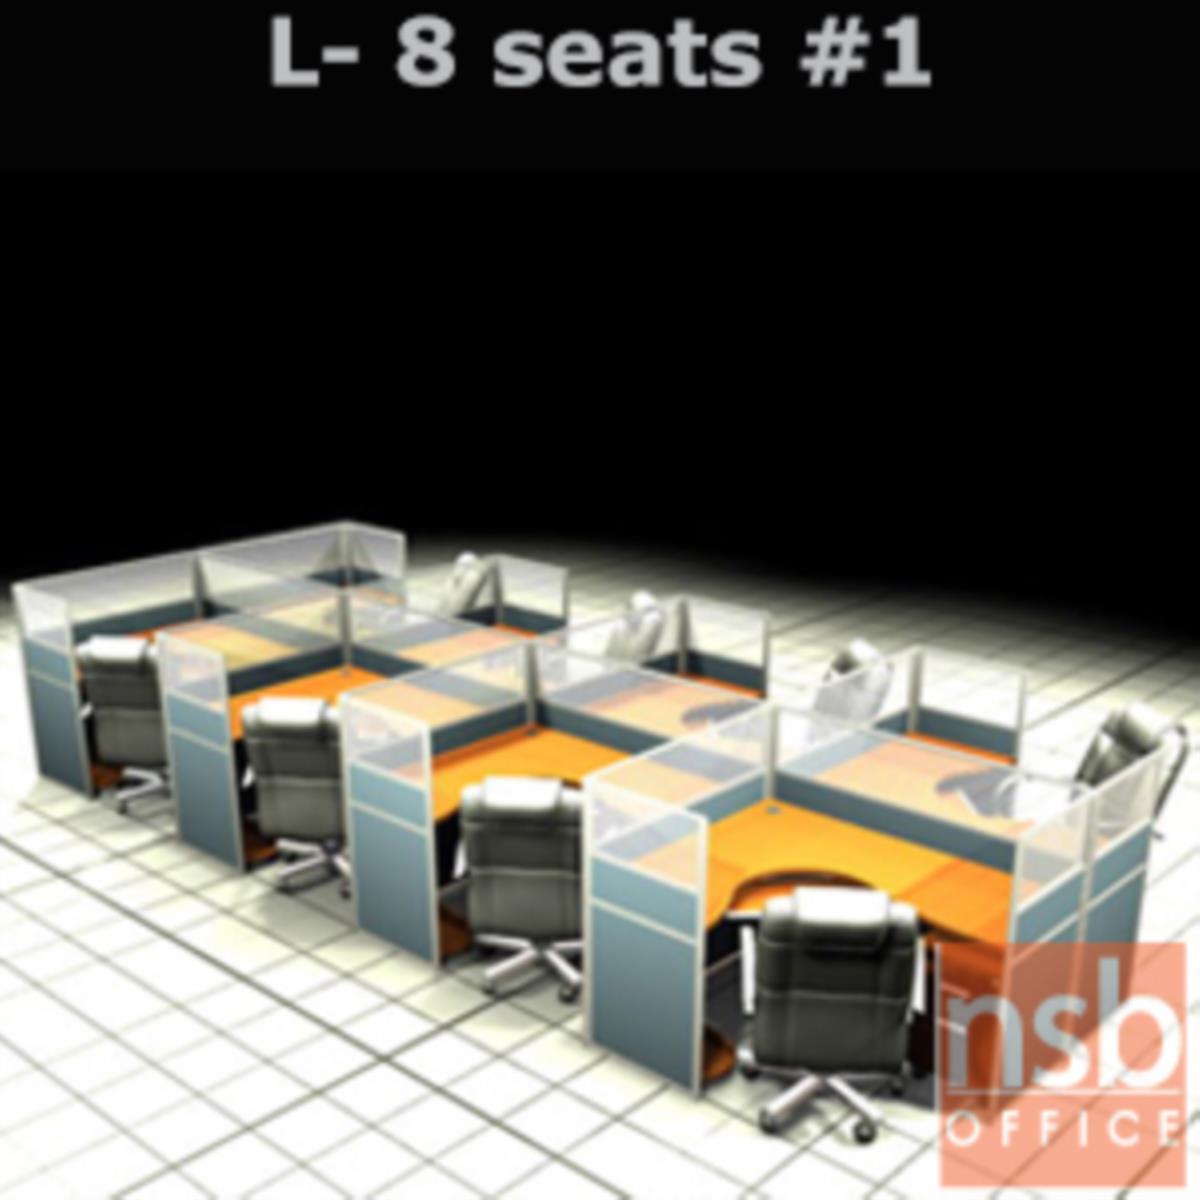 A04A124:ชุดโต๊ะทำงานกลุ่มตัวแอล 8 ที่นั่ง   ขนาดรวม 610W*246D cm. พร้อมพาร์ทิชั่นครึ่งกระจกขัดลาย